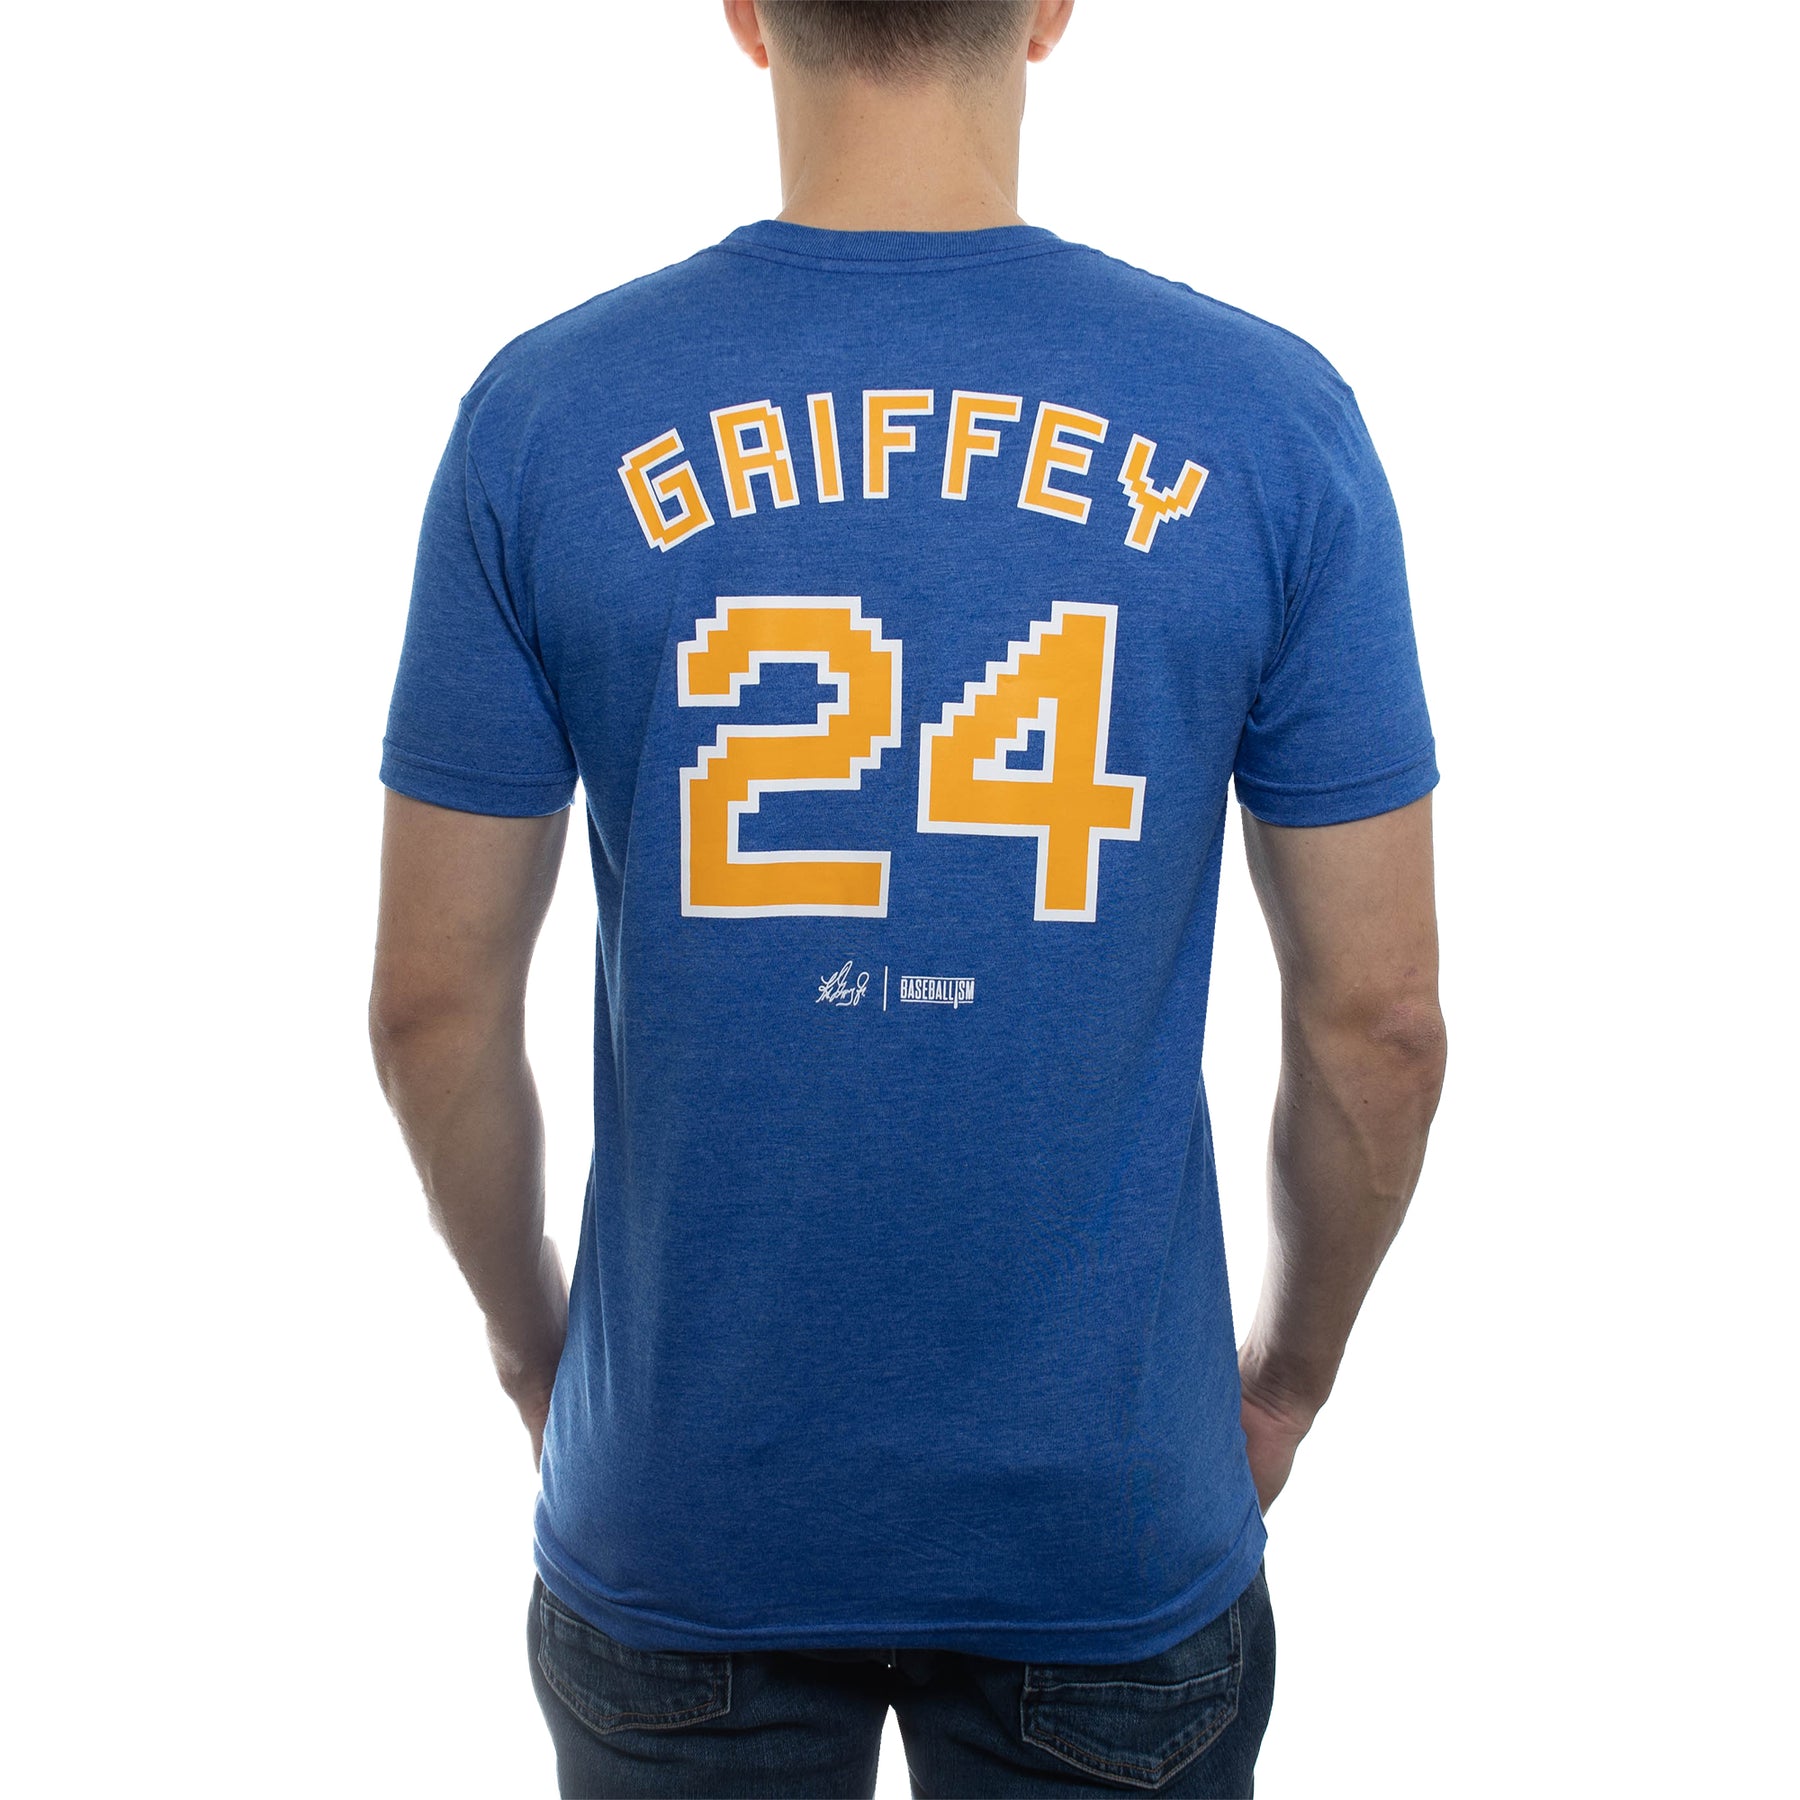 Ken Griffey Jr. Tee T-shirt - Sports - Magnet